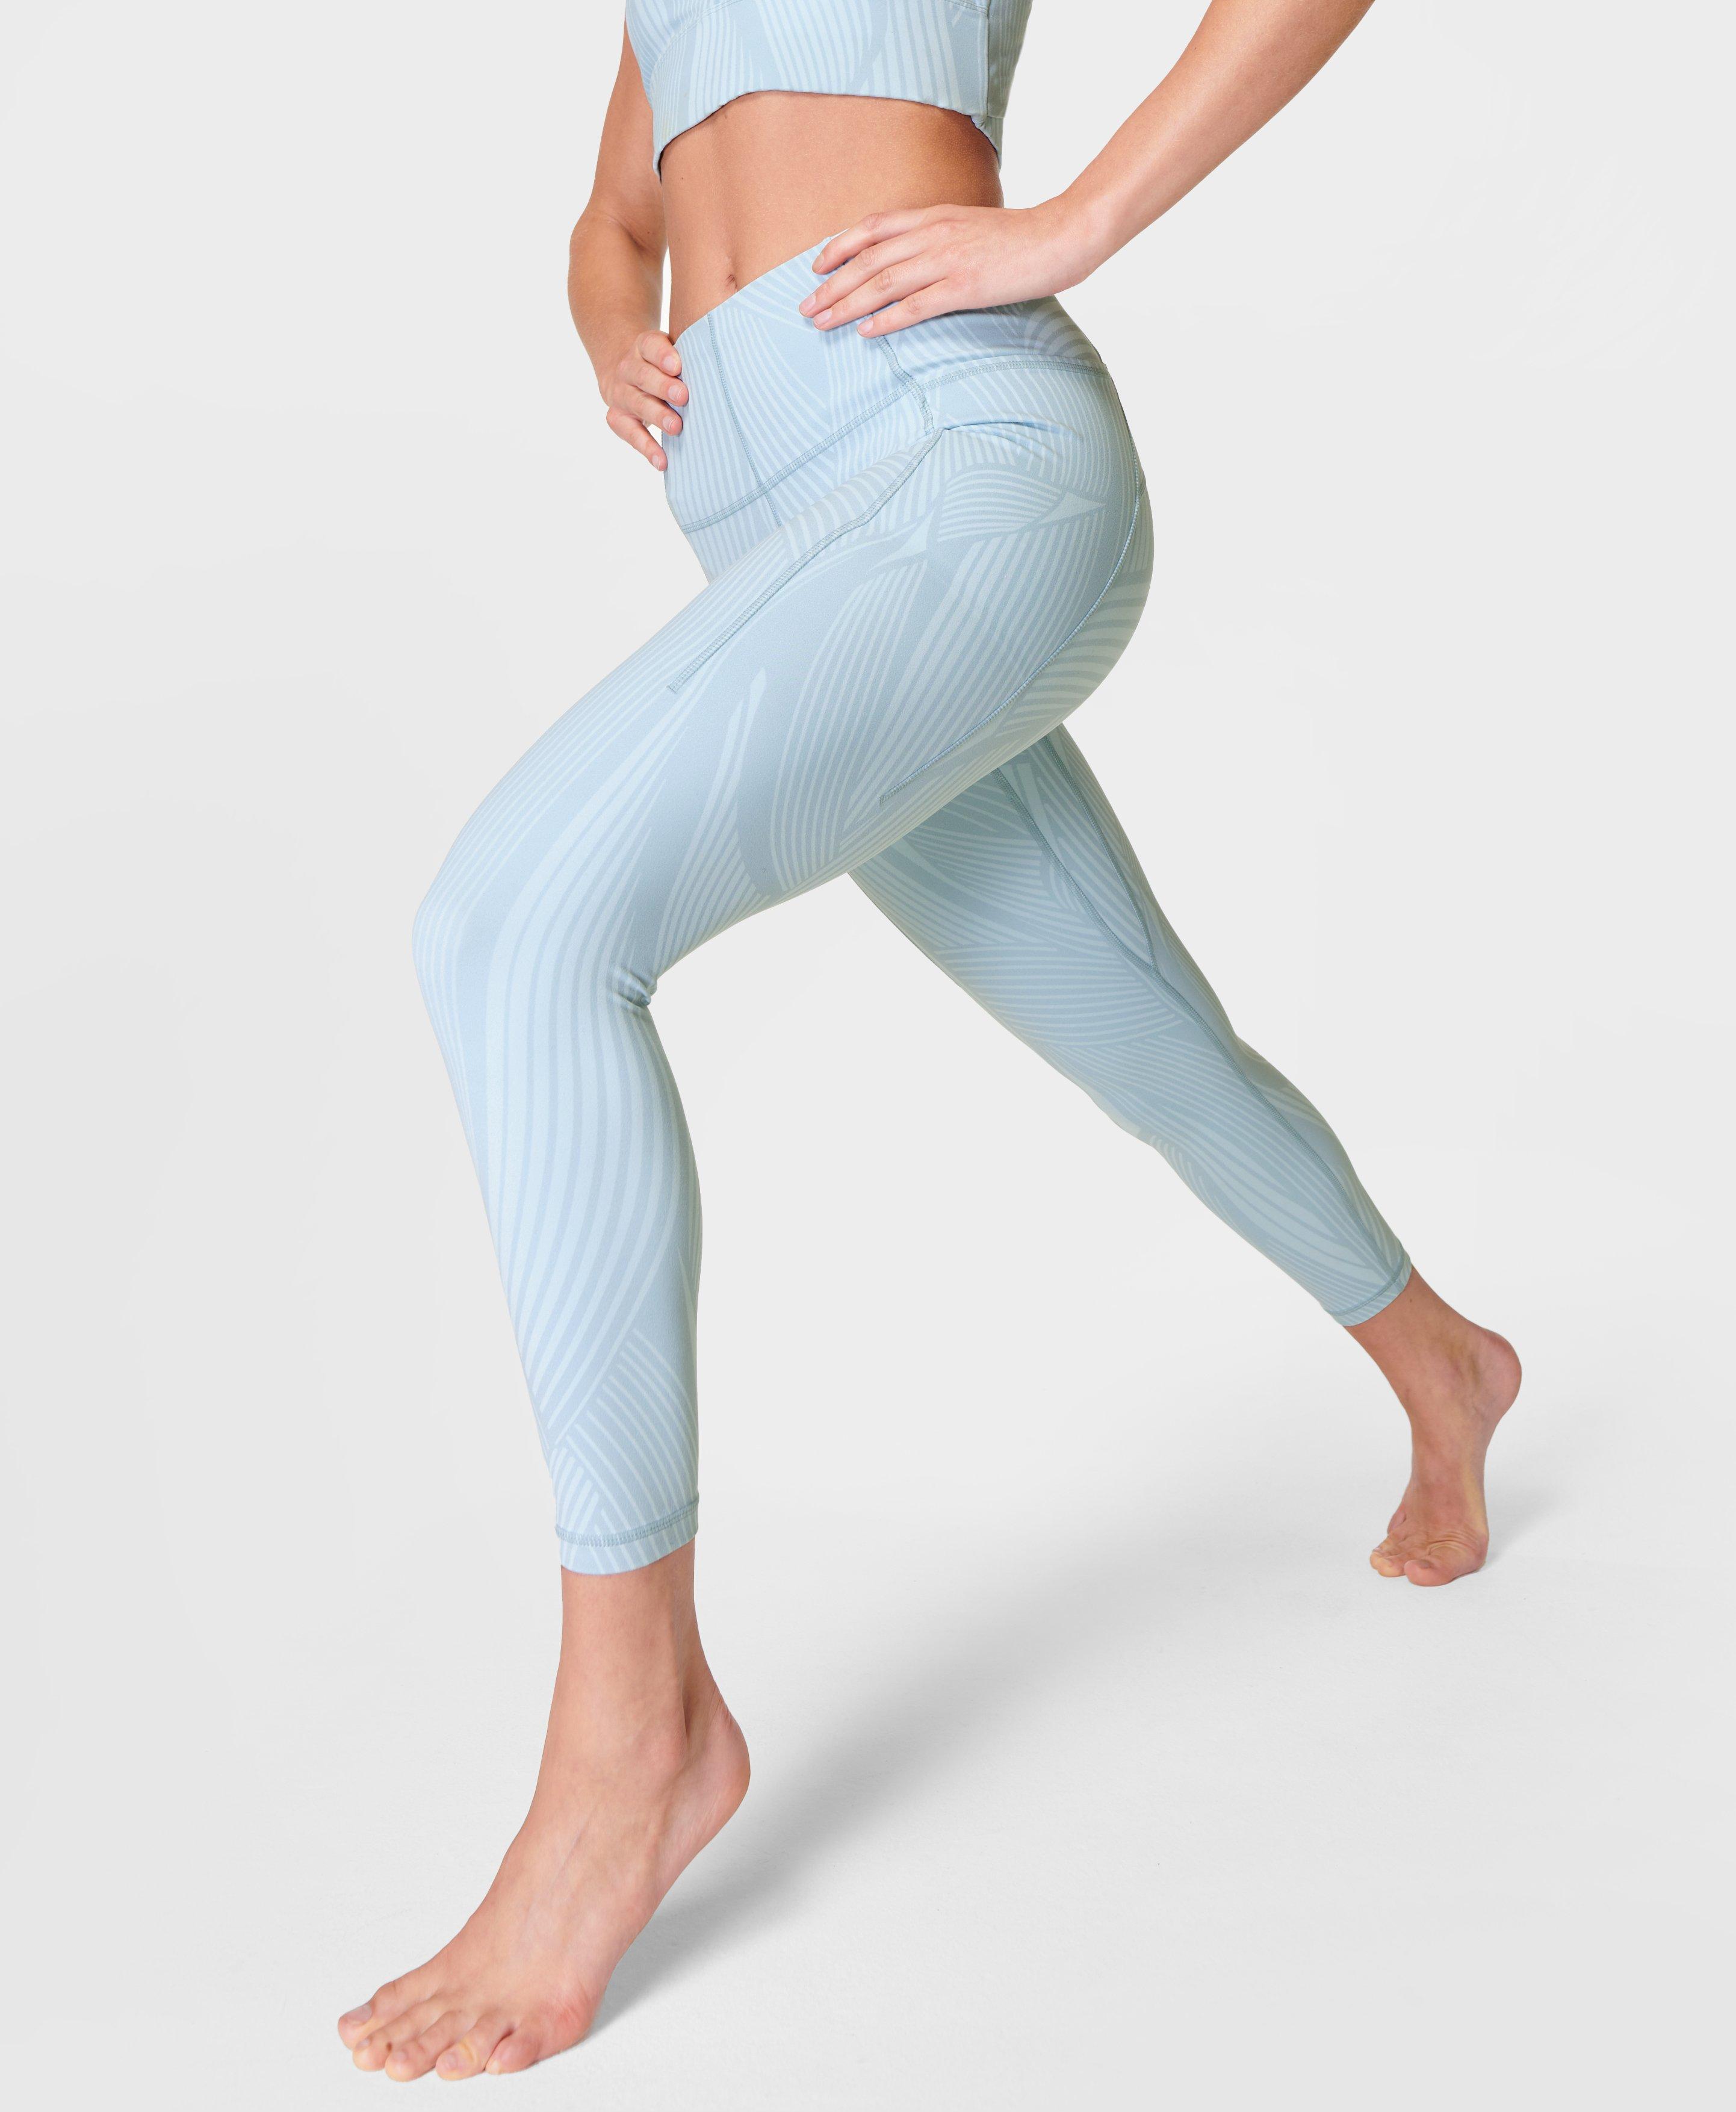 Super Soft 7/8 Yoga Leggings - Sky Blue Wave Print, Women's Leggings